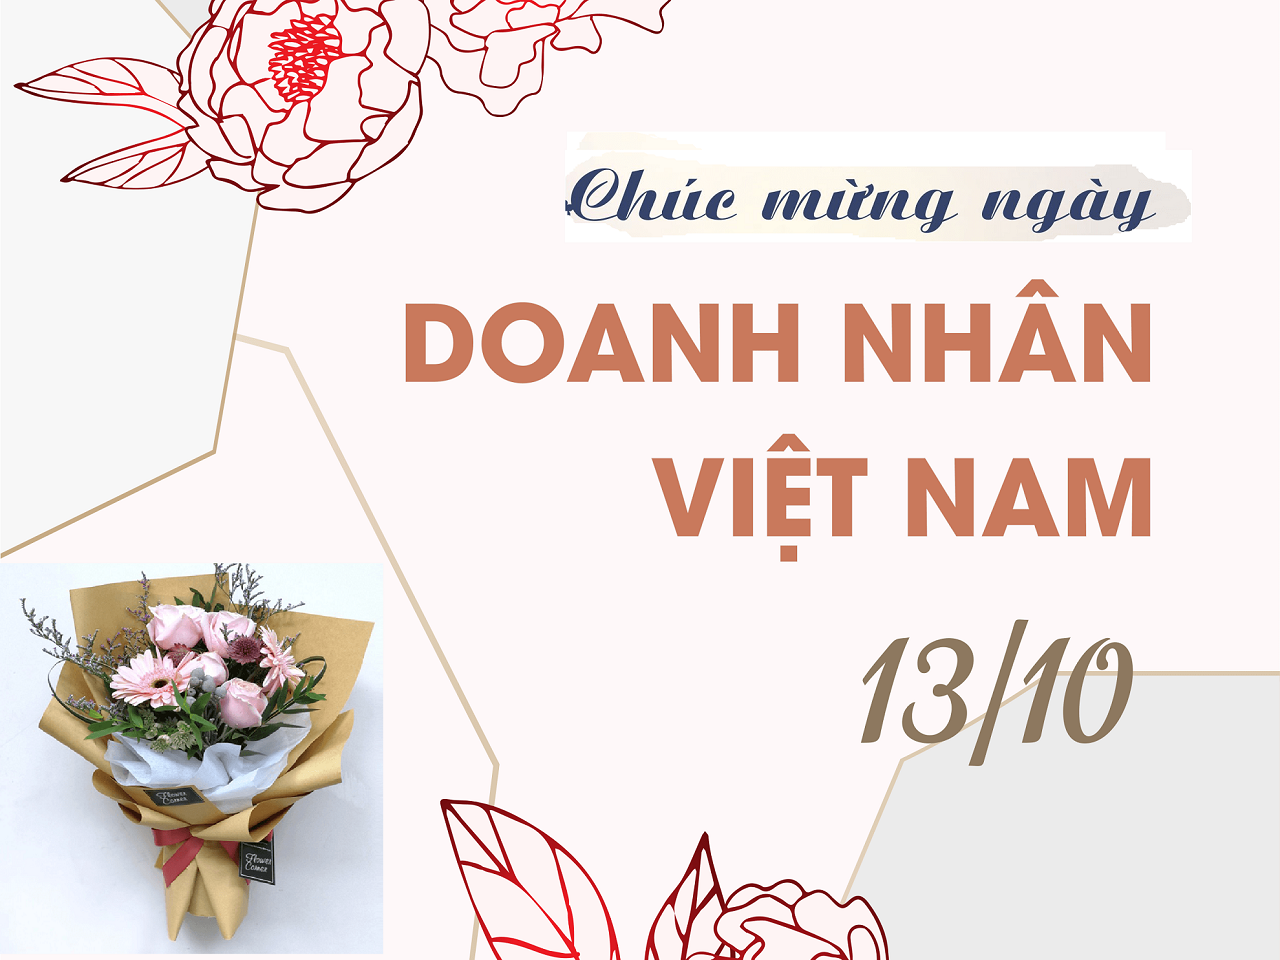 Chúc mừng Doanh nghiệp nhân ngày Doanh nhân Việt Nam 13/10/2020